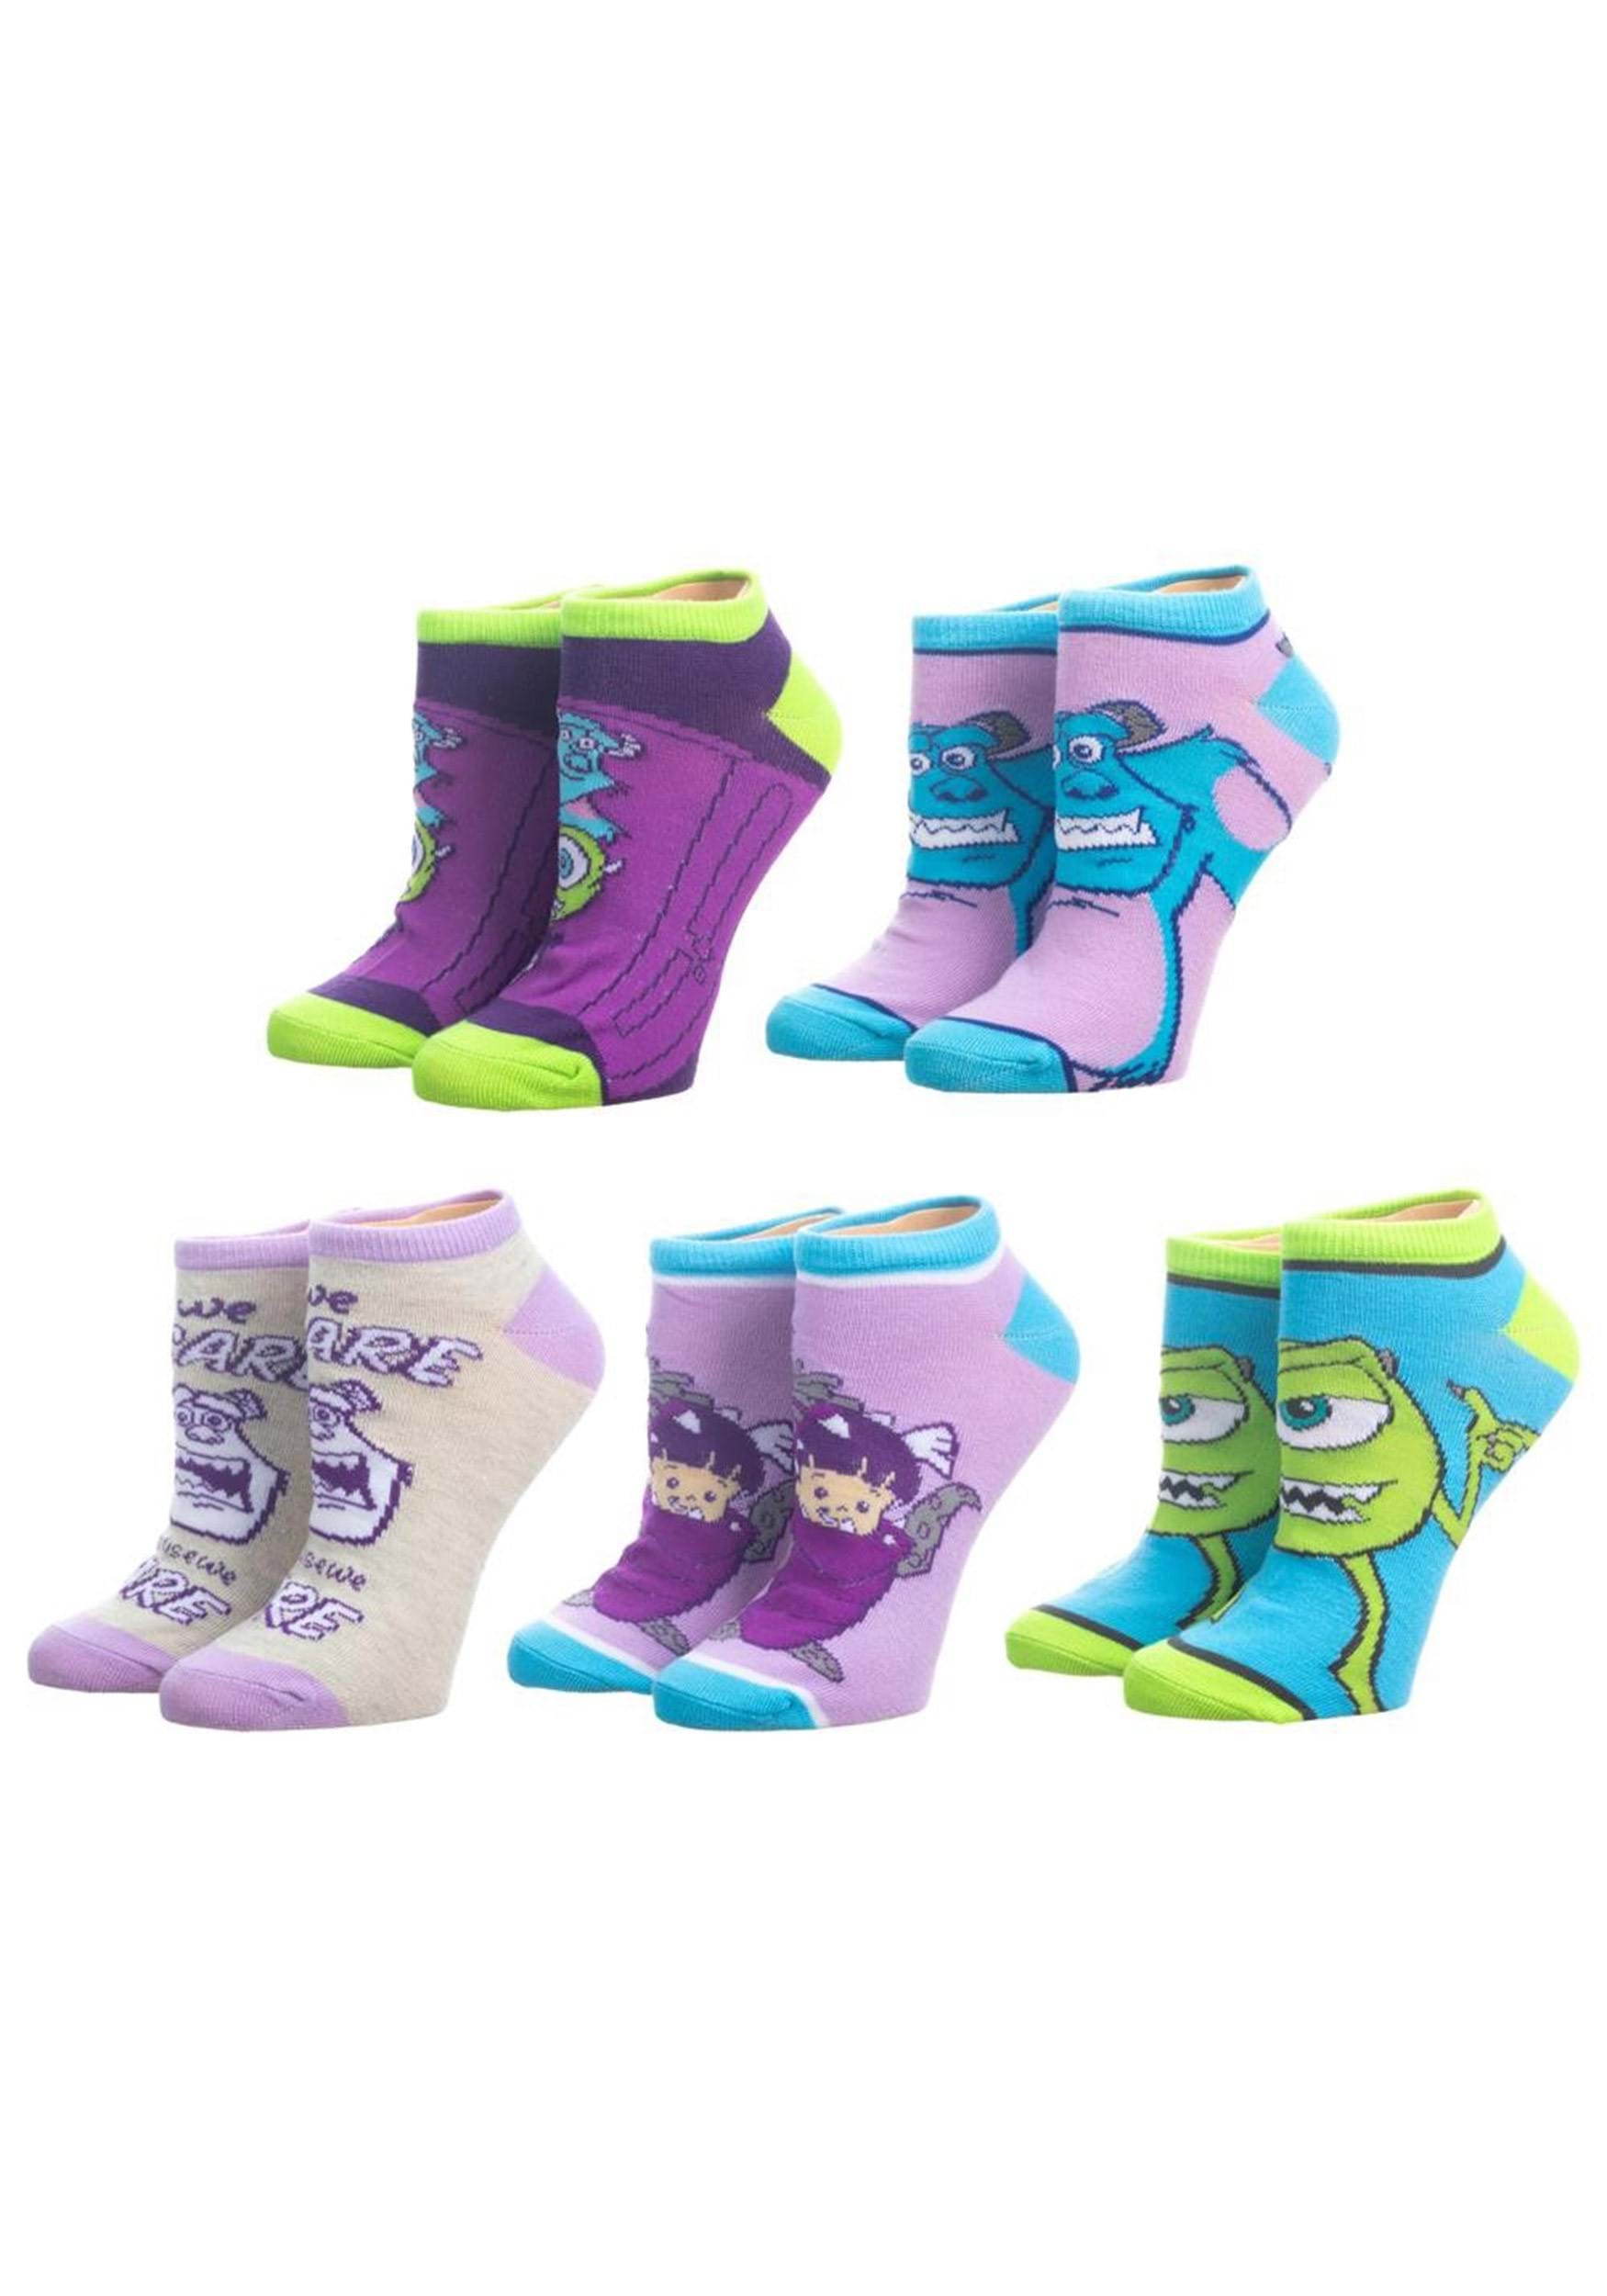 Womens Disney Monsters Inc. 5 Pack Ankle Socks | Disney Socks